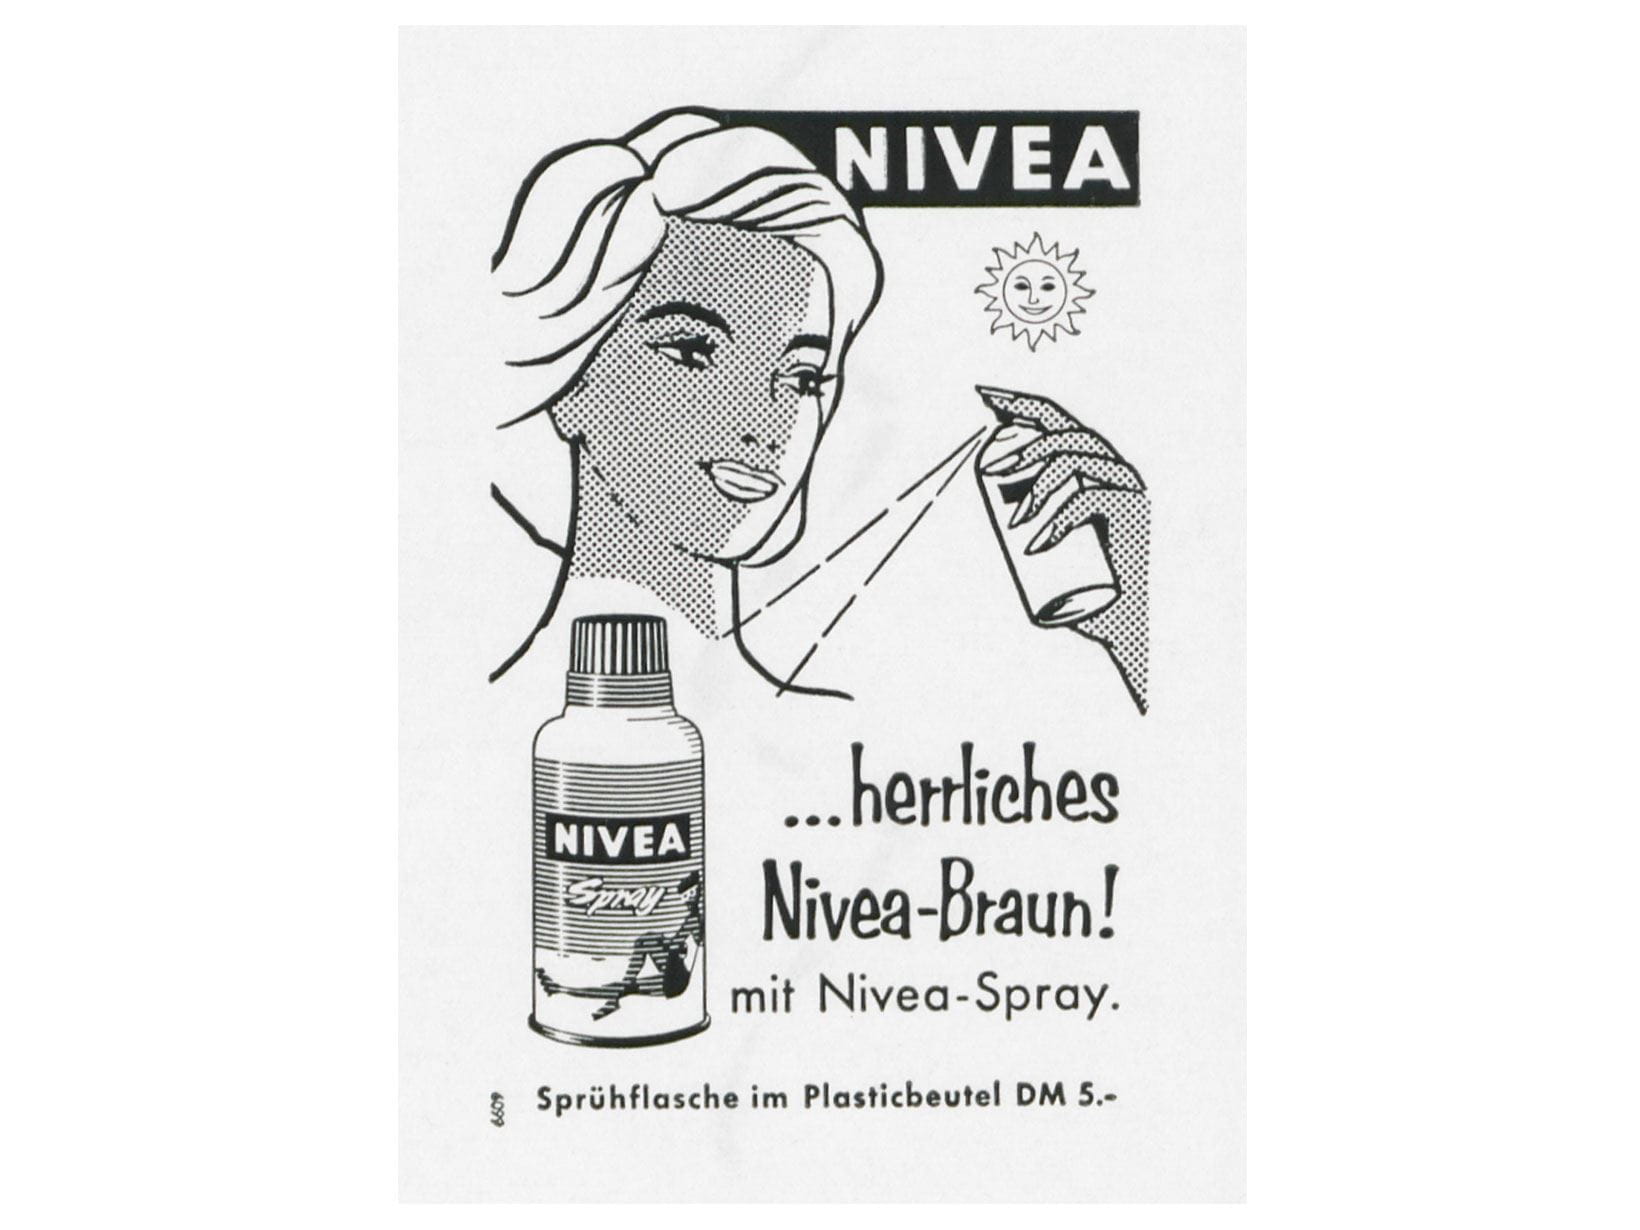 werbeanzeige-nivea-spray-1959